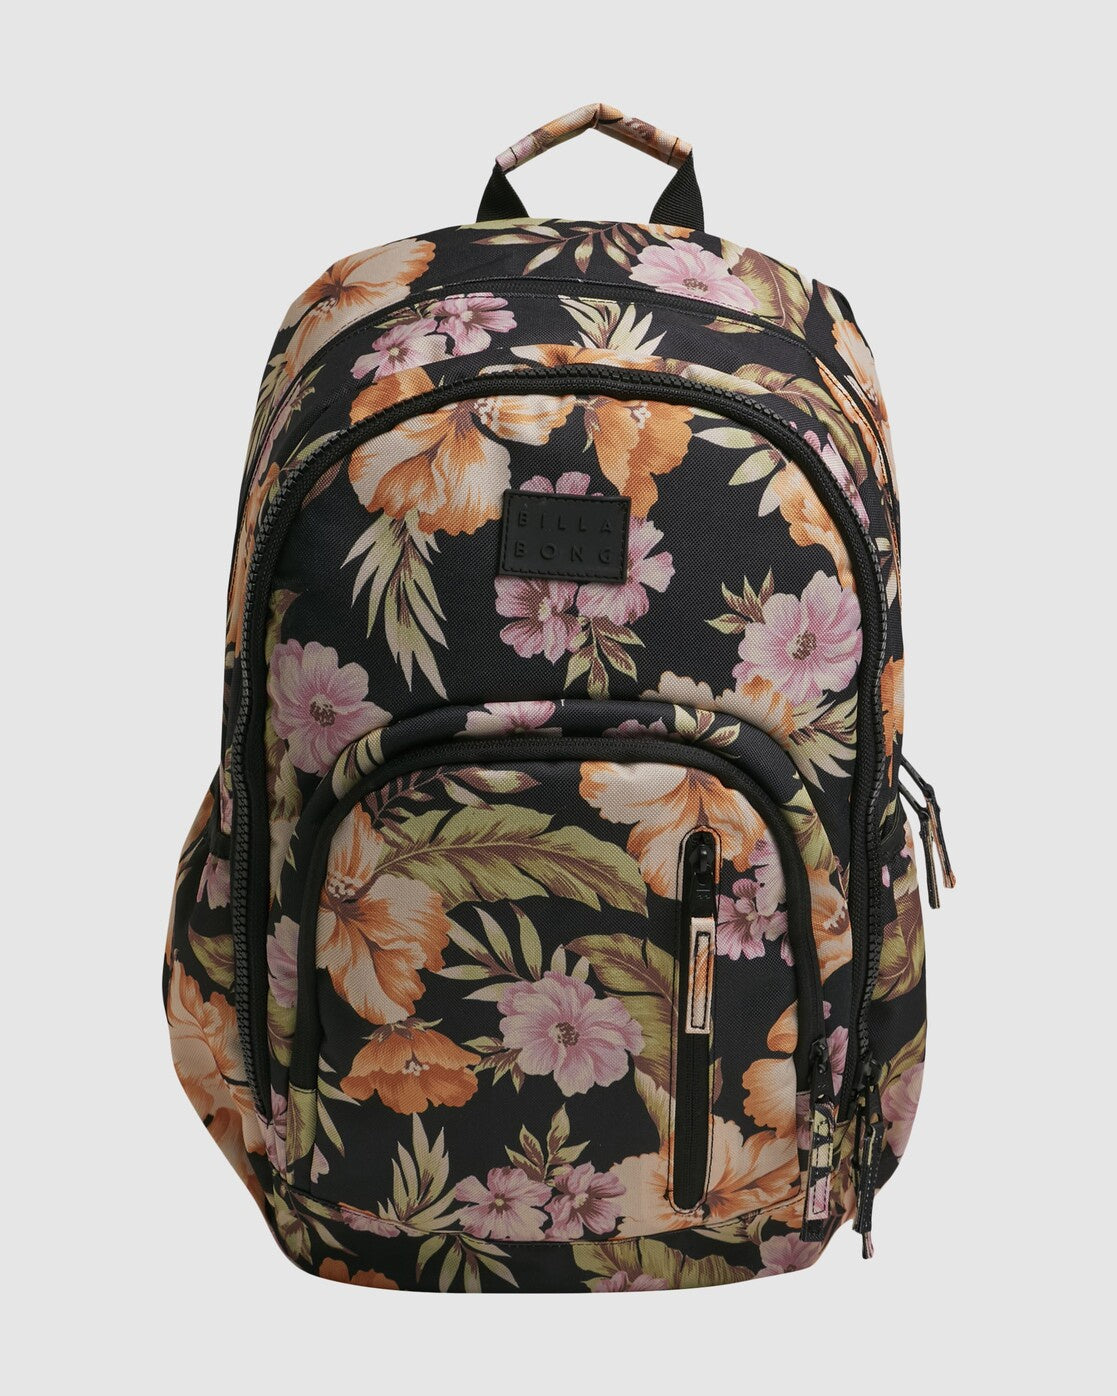 Calypso Roadie Backpack